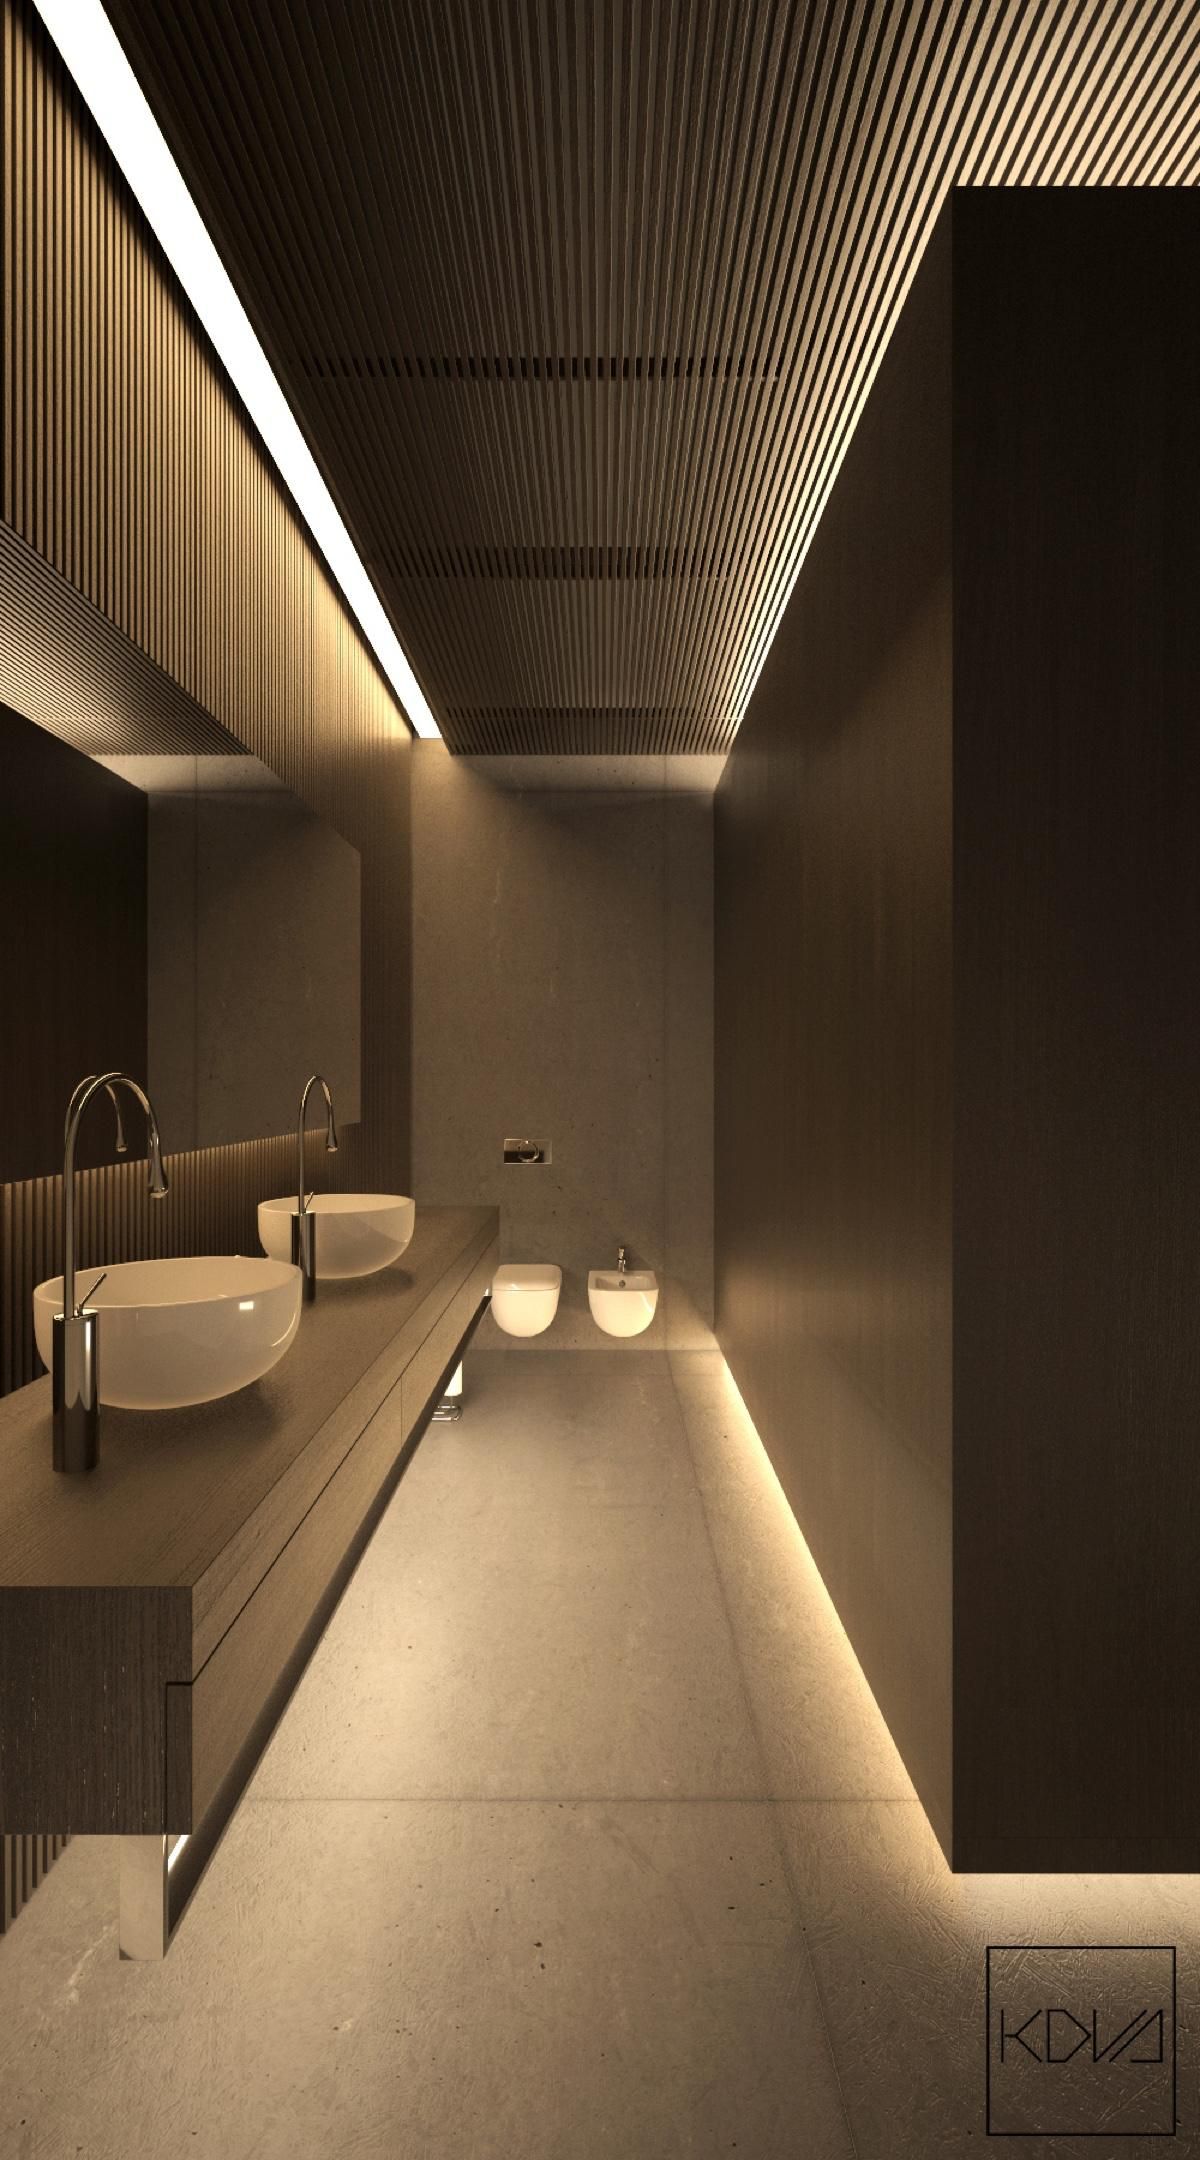 Smart bathroom lighting ideas